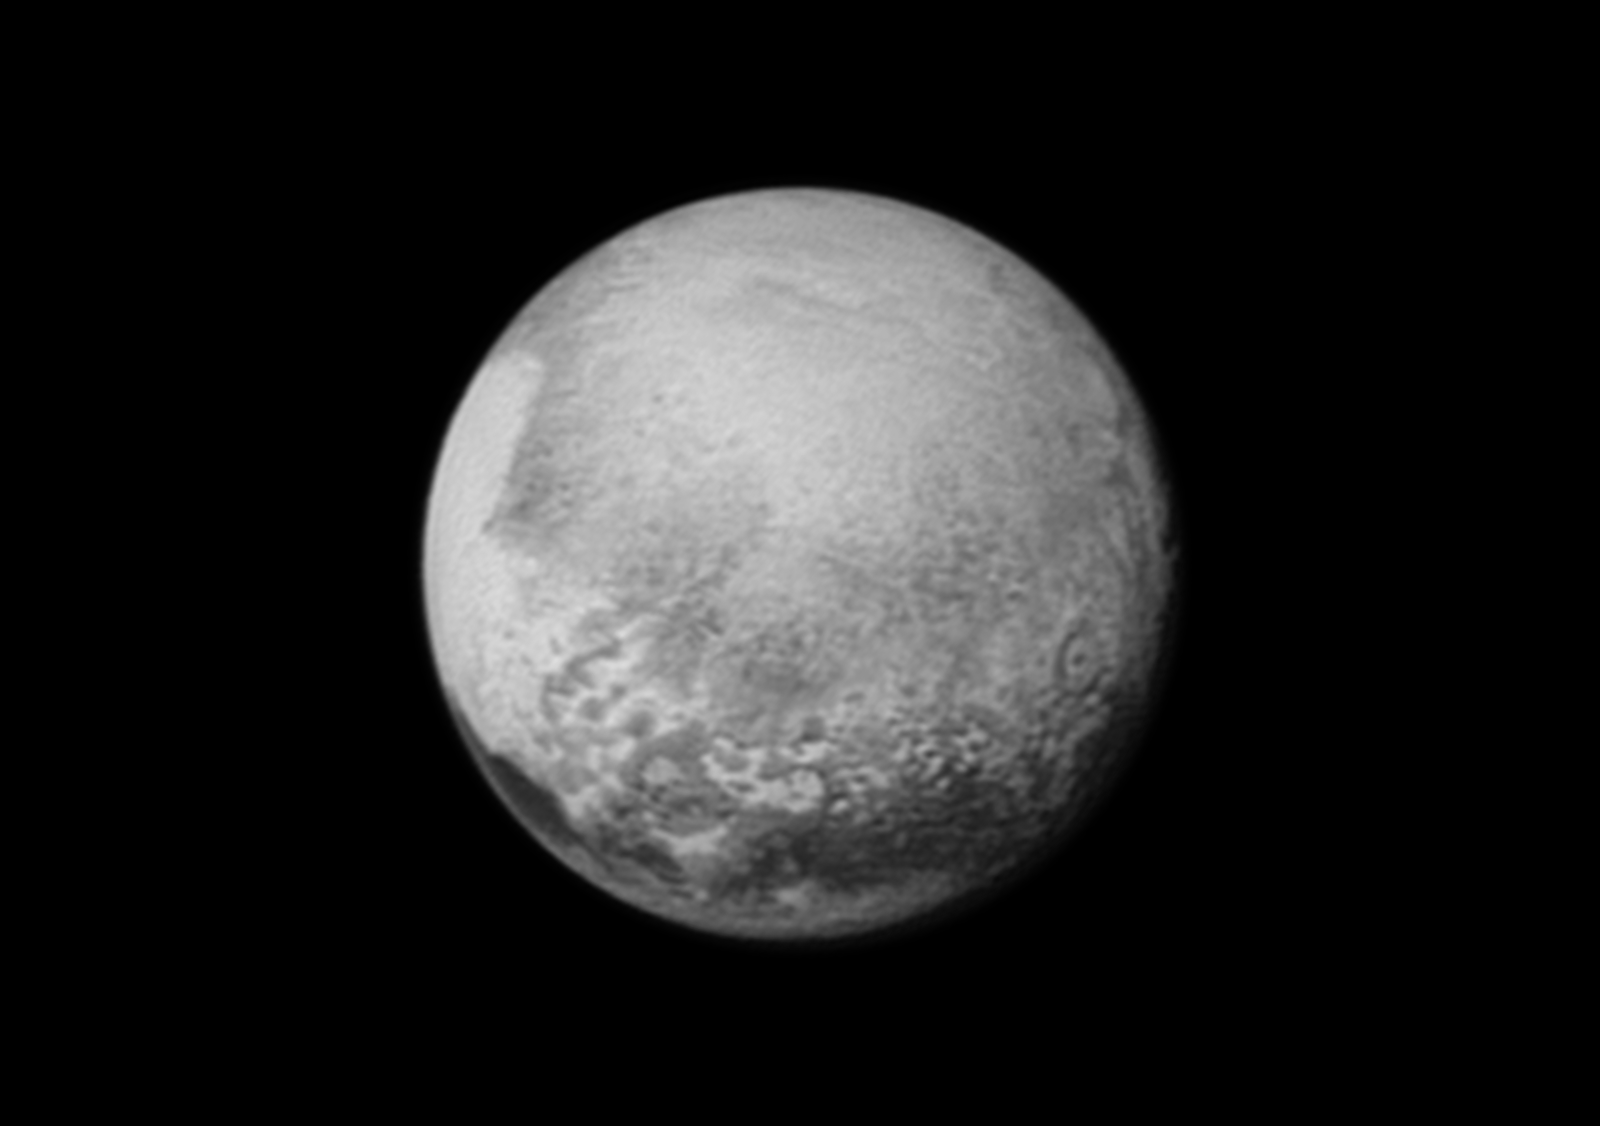 La sonde spatiale New Horizons, lancée par la Nasa en 2006, est passée mardi au plus près de Pluton. Ce survol historique va permettre d'en apprendre beaucoup sur la planète naine, selon la Nasa.